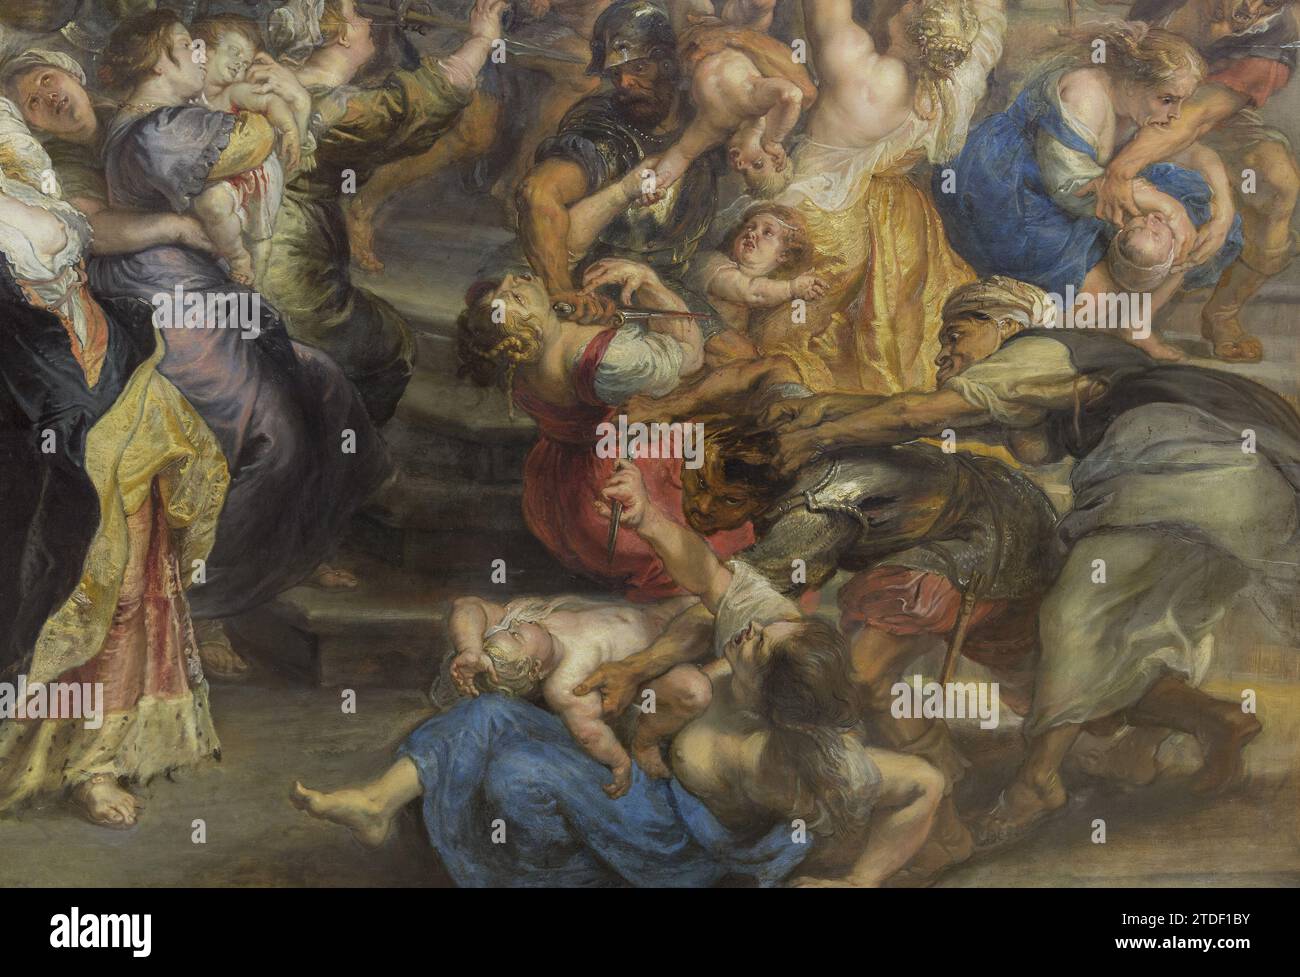 Détail de la peinture de Rubens Banque D'Images